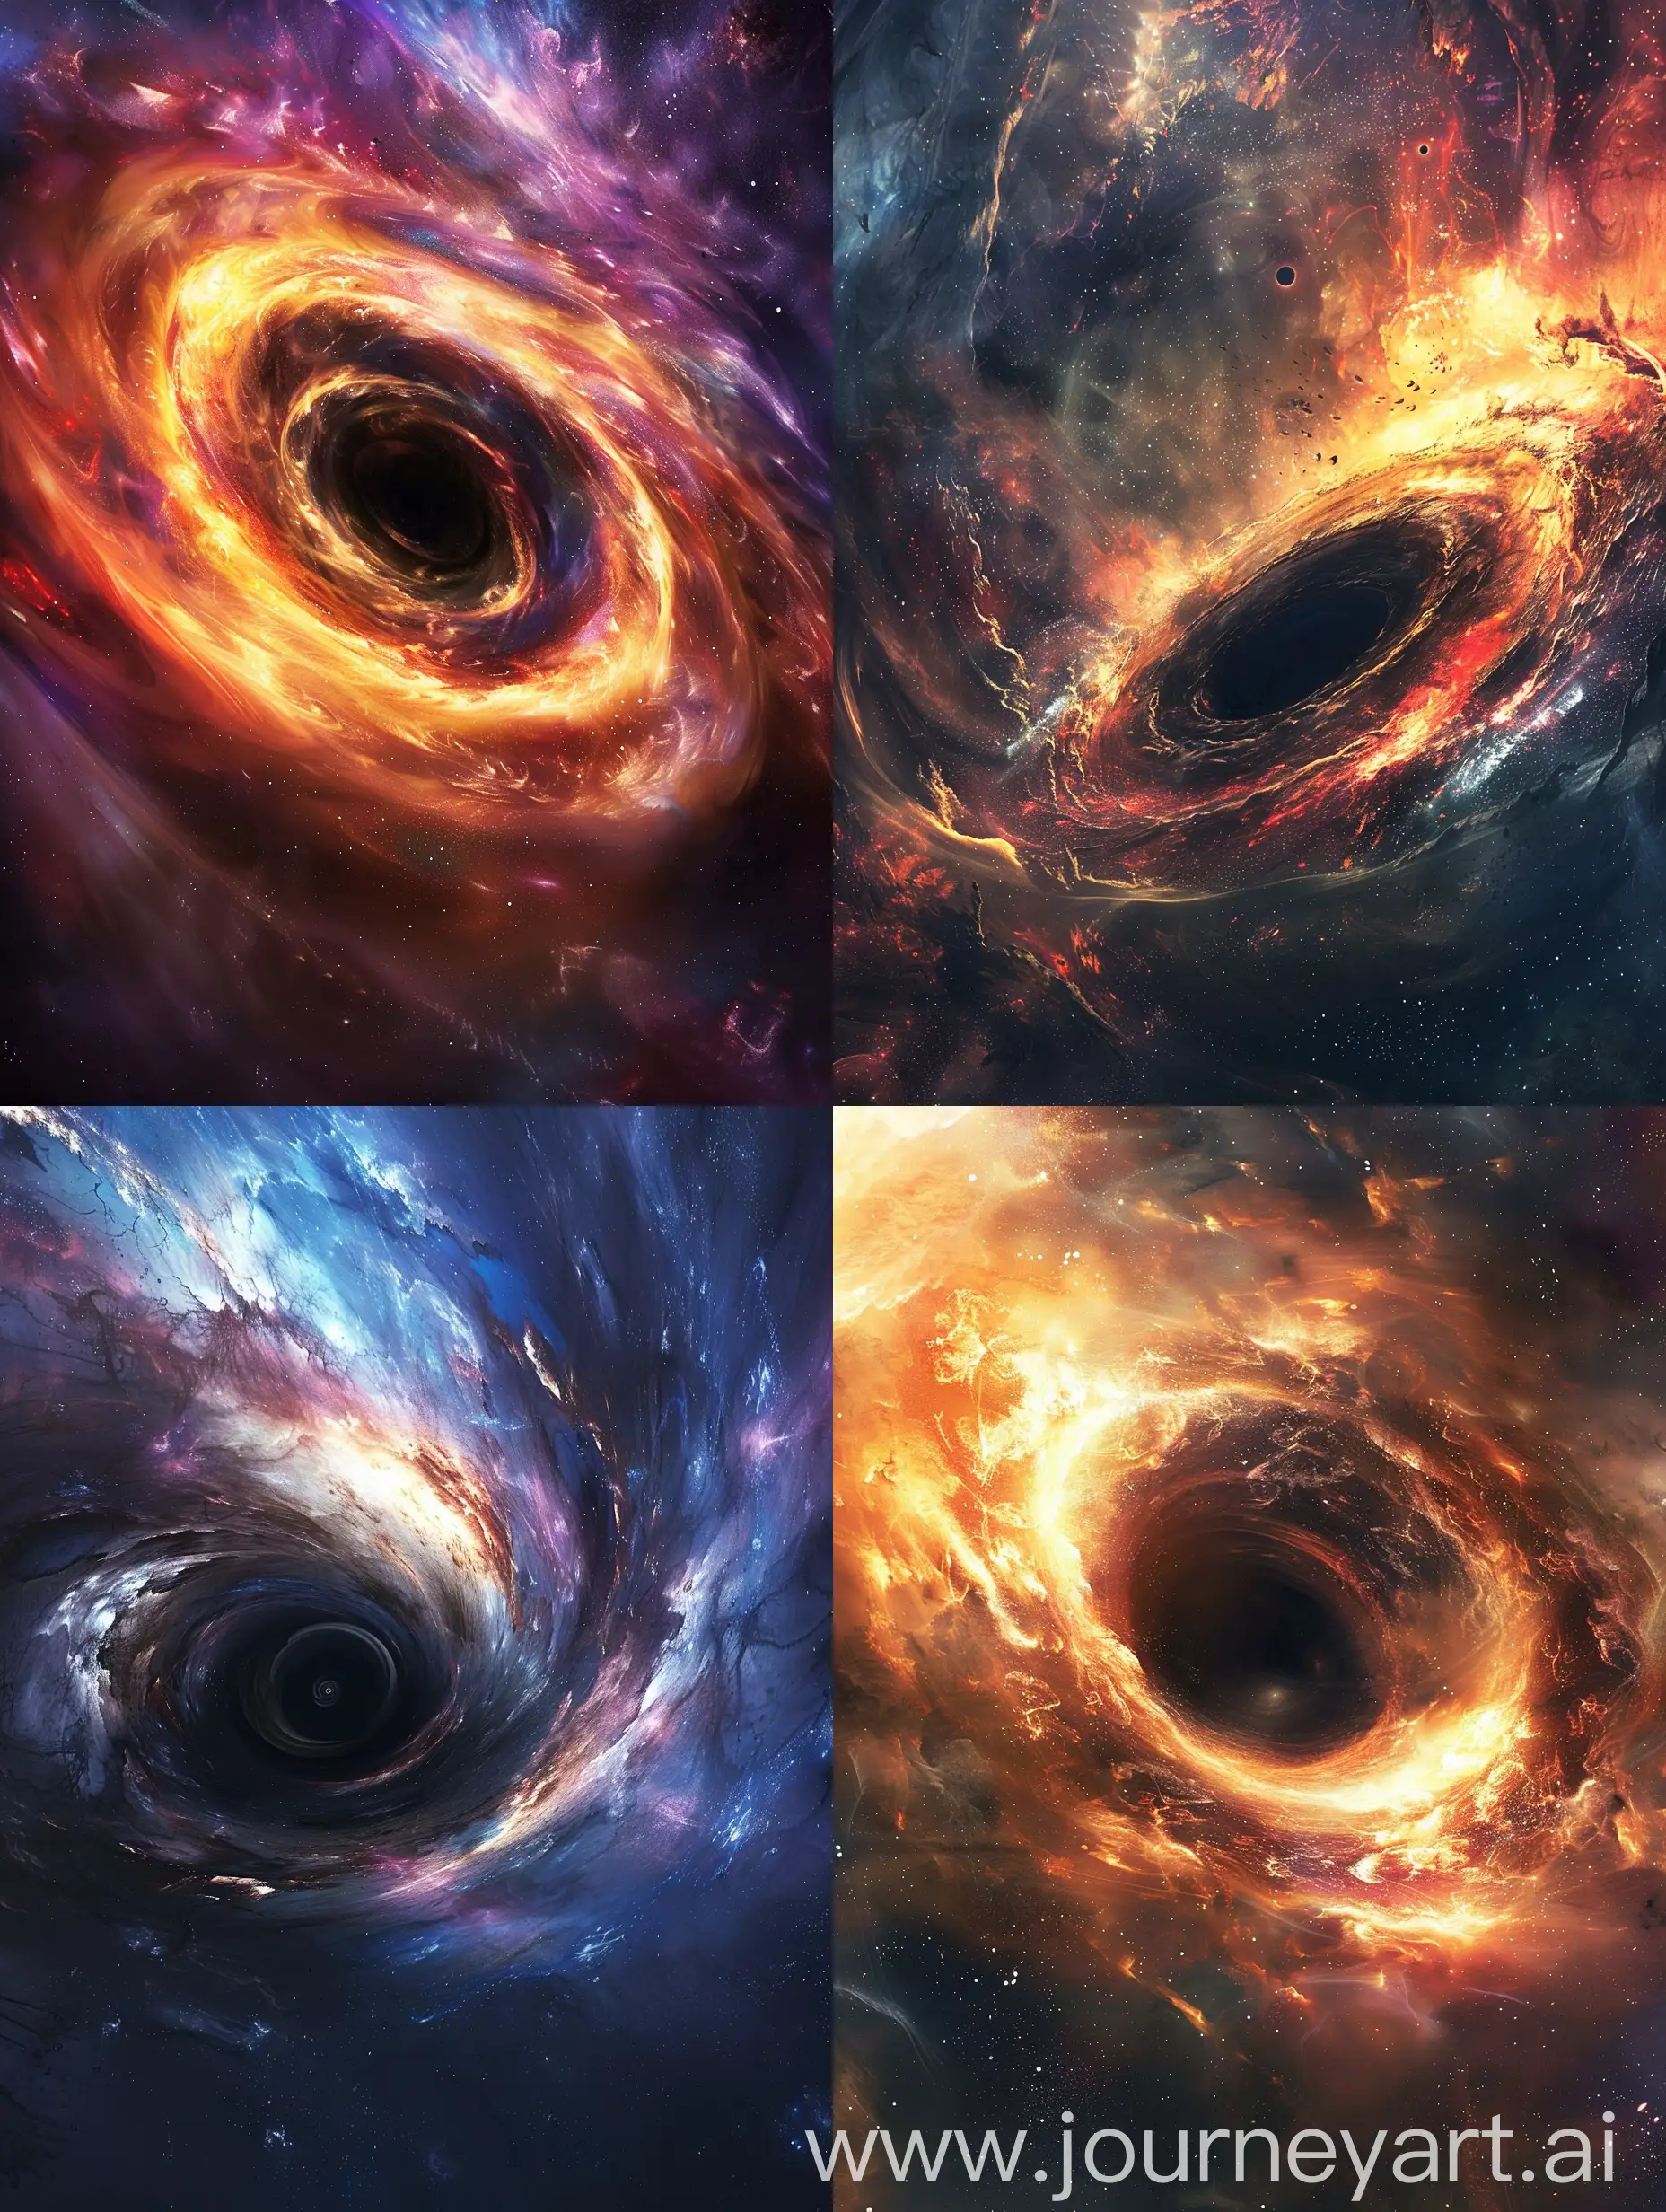 Придумай превью для видео на тему "Hidden Secrets of Black Holes: Revealing the Mysticism of the Cosmos"